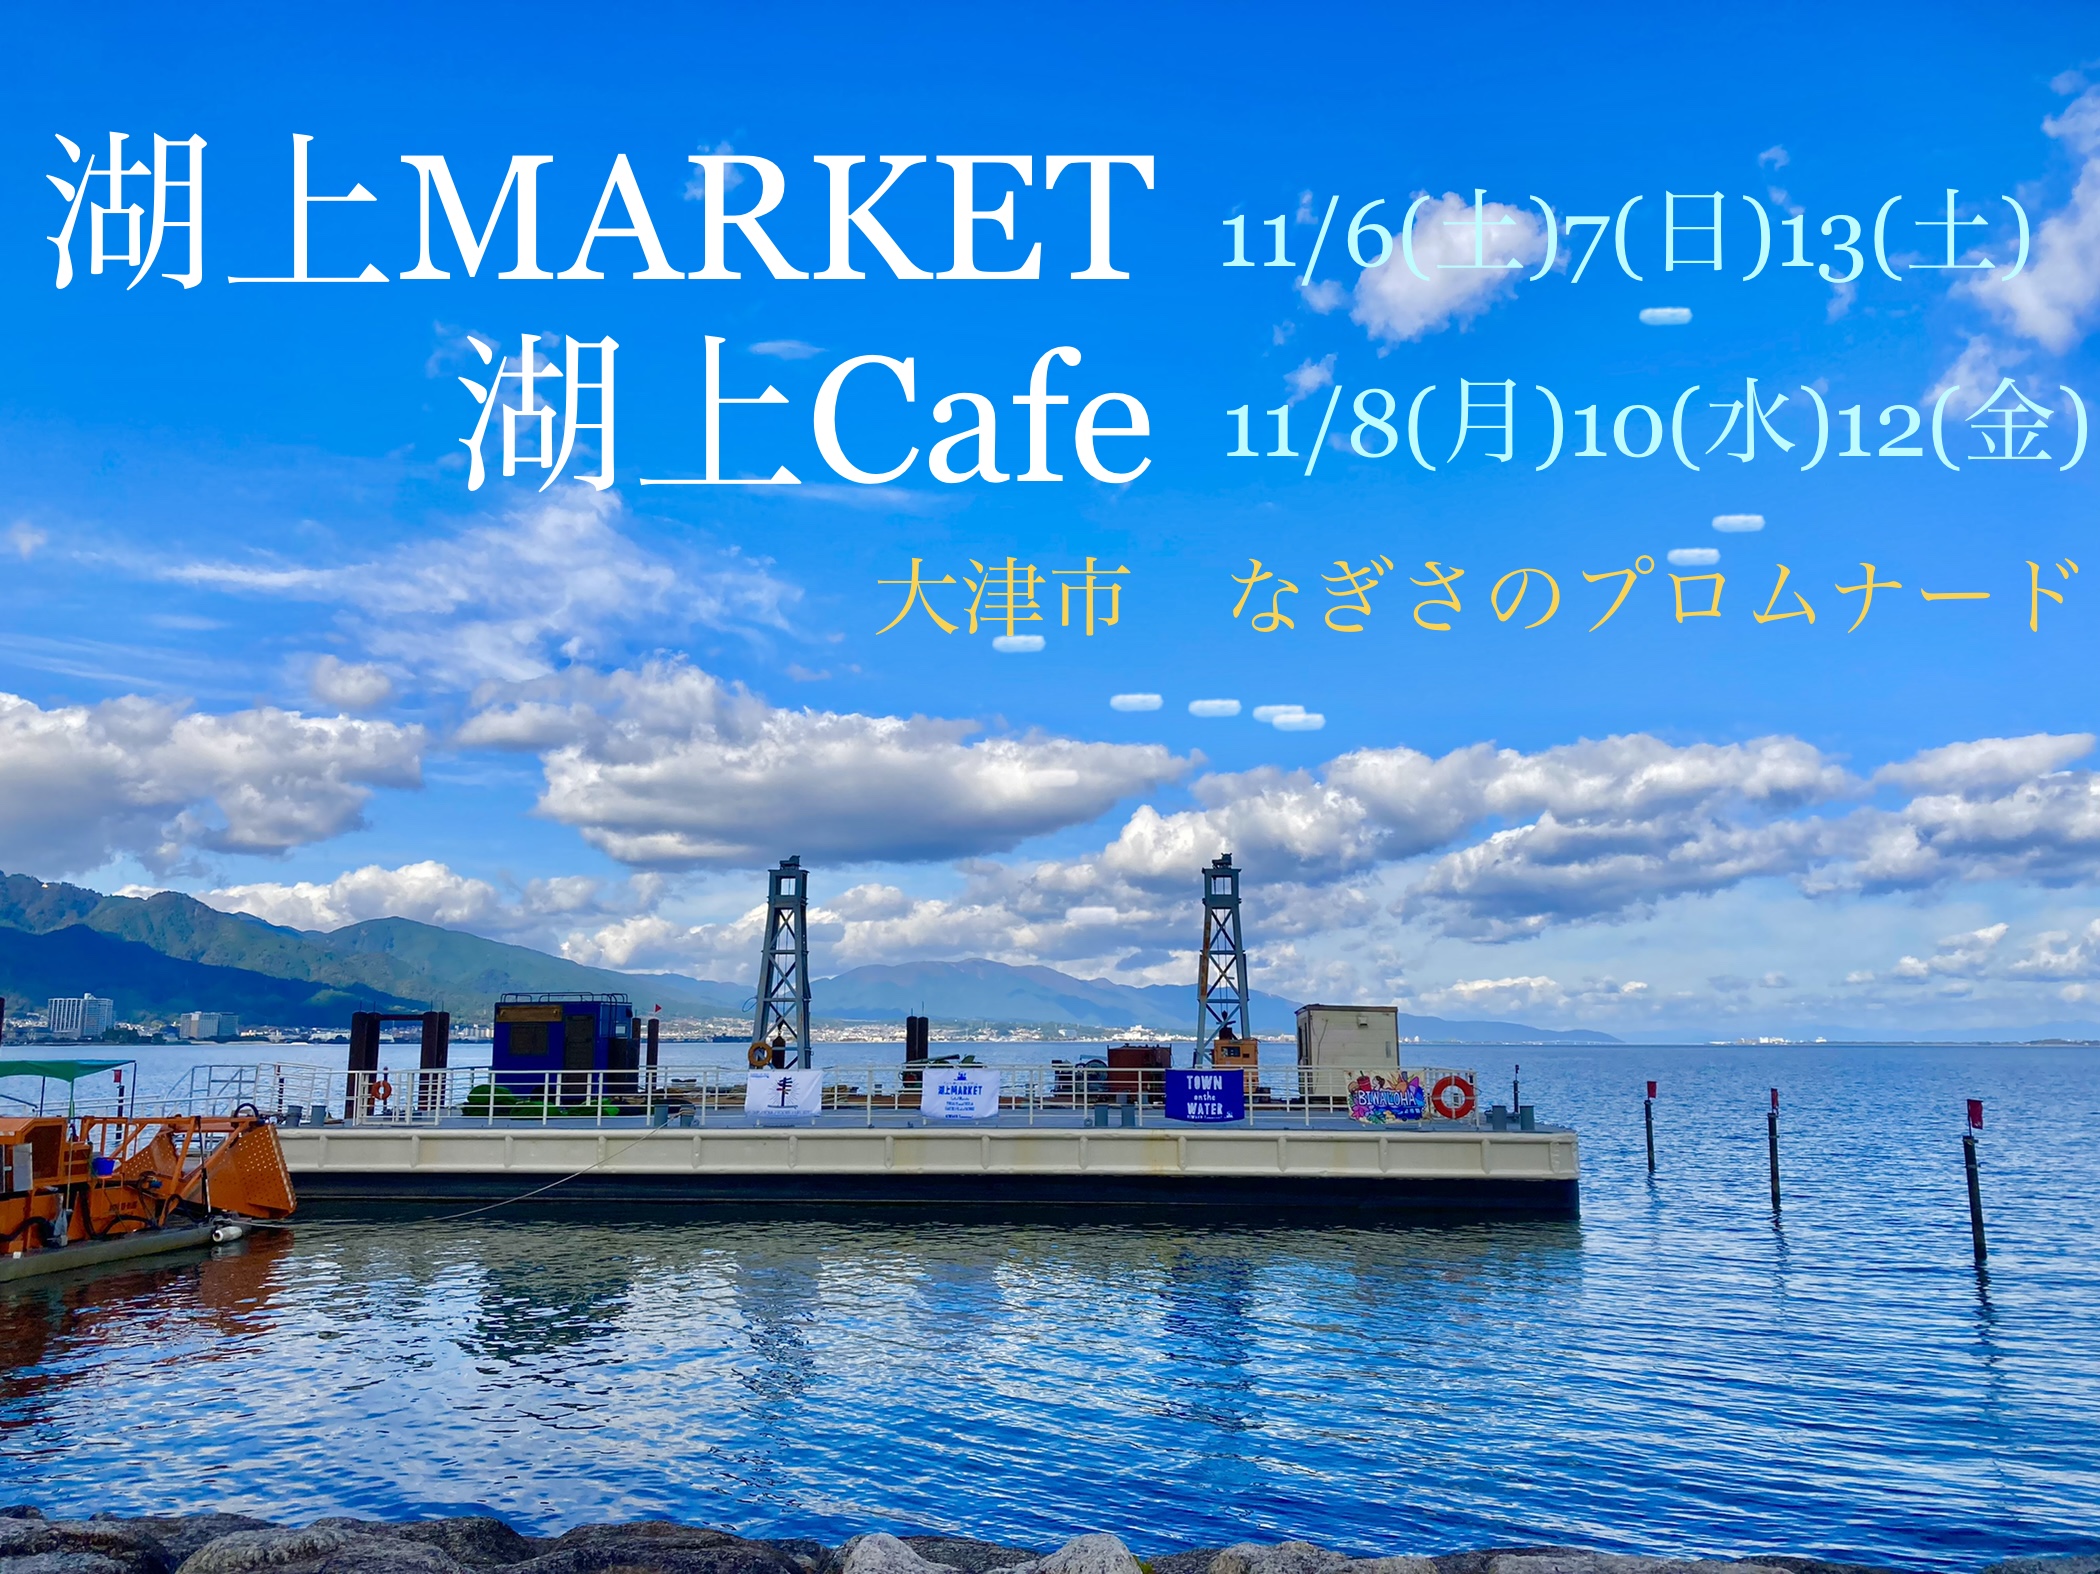 【11/6(土)7(日)13(土)】湖上MARKET【11/8(月)10(水)12(金)】湖上Cafe【大津市】琵琶湖の上でカフェやマルシェ、湖岸でイベントを楽しもう♪